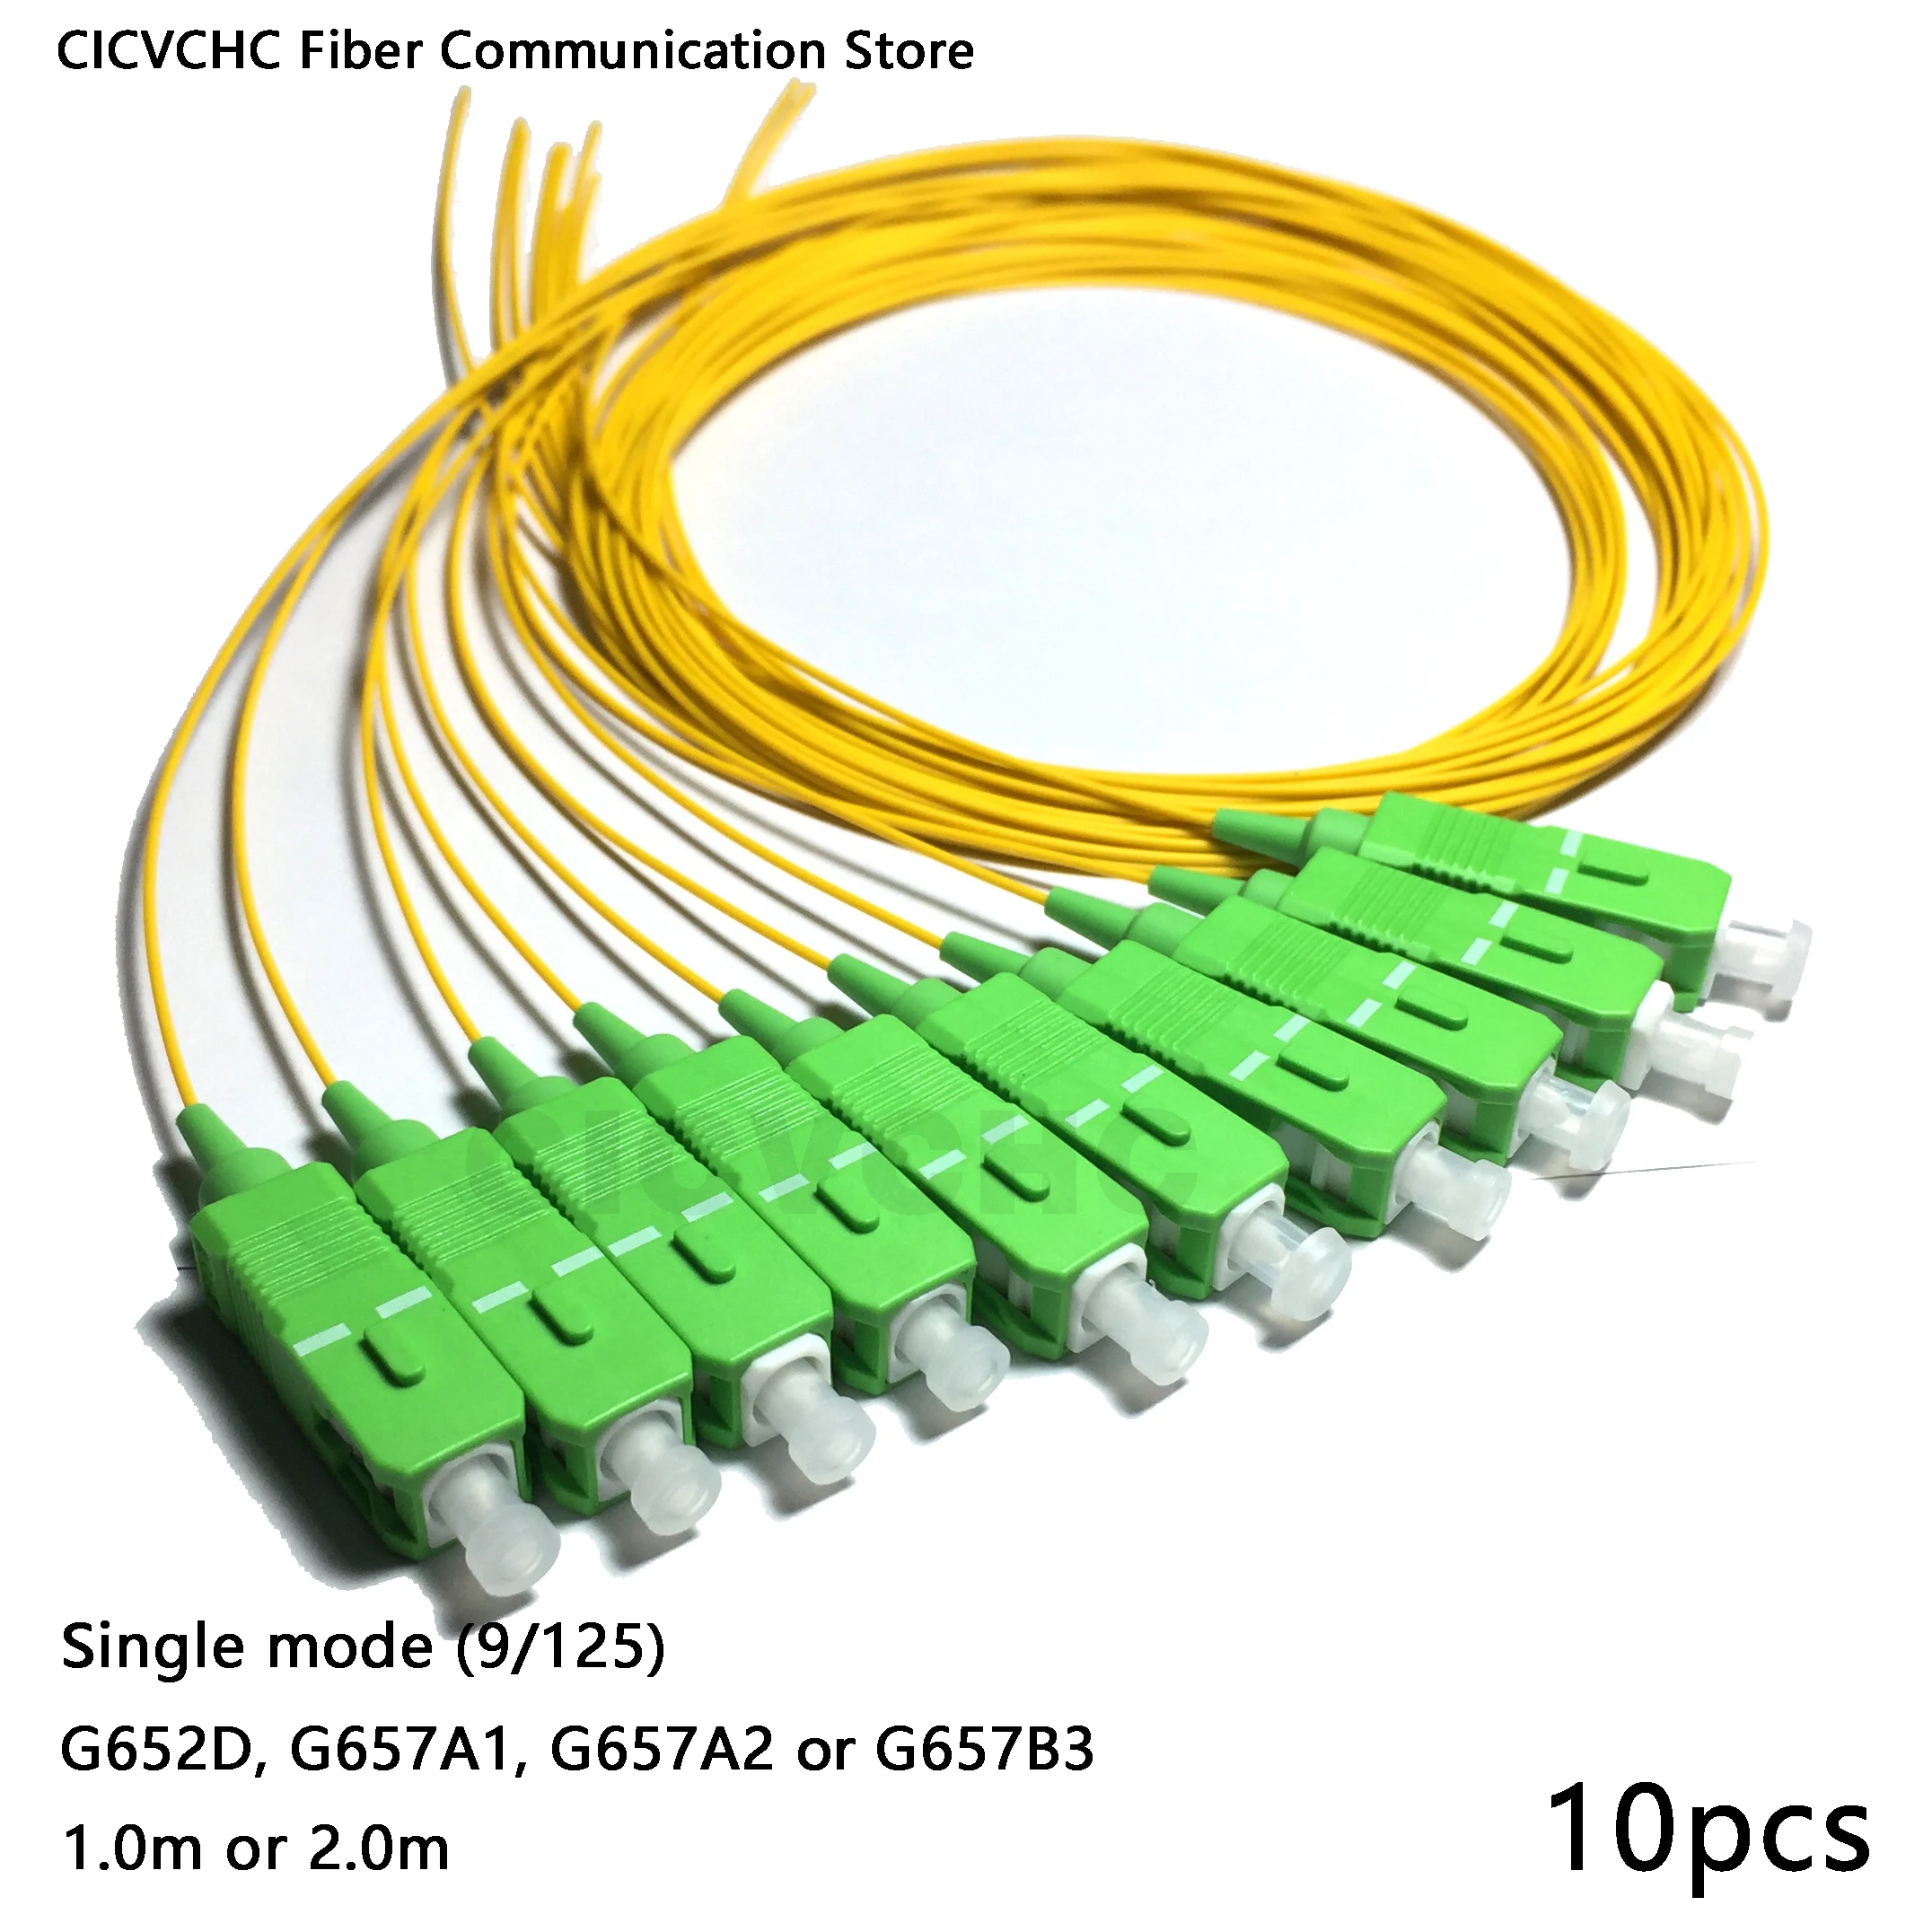 10pcs SC/APC Fiber Pigtail with Single mode (G652D, G657A1, G657A2, G657B3)-0.9mm cable